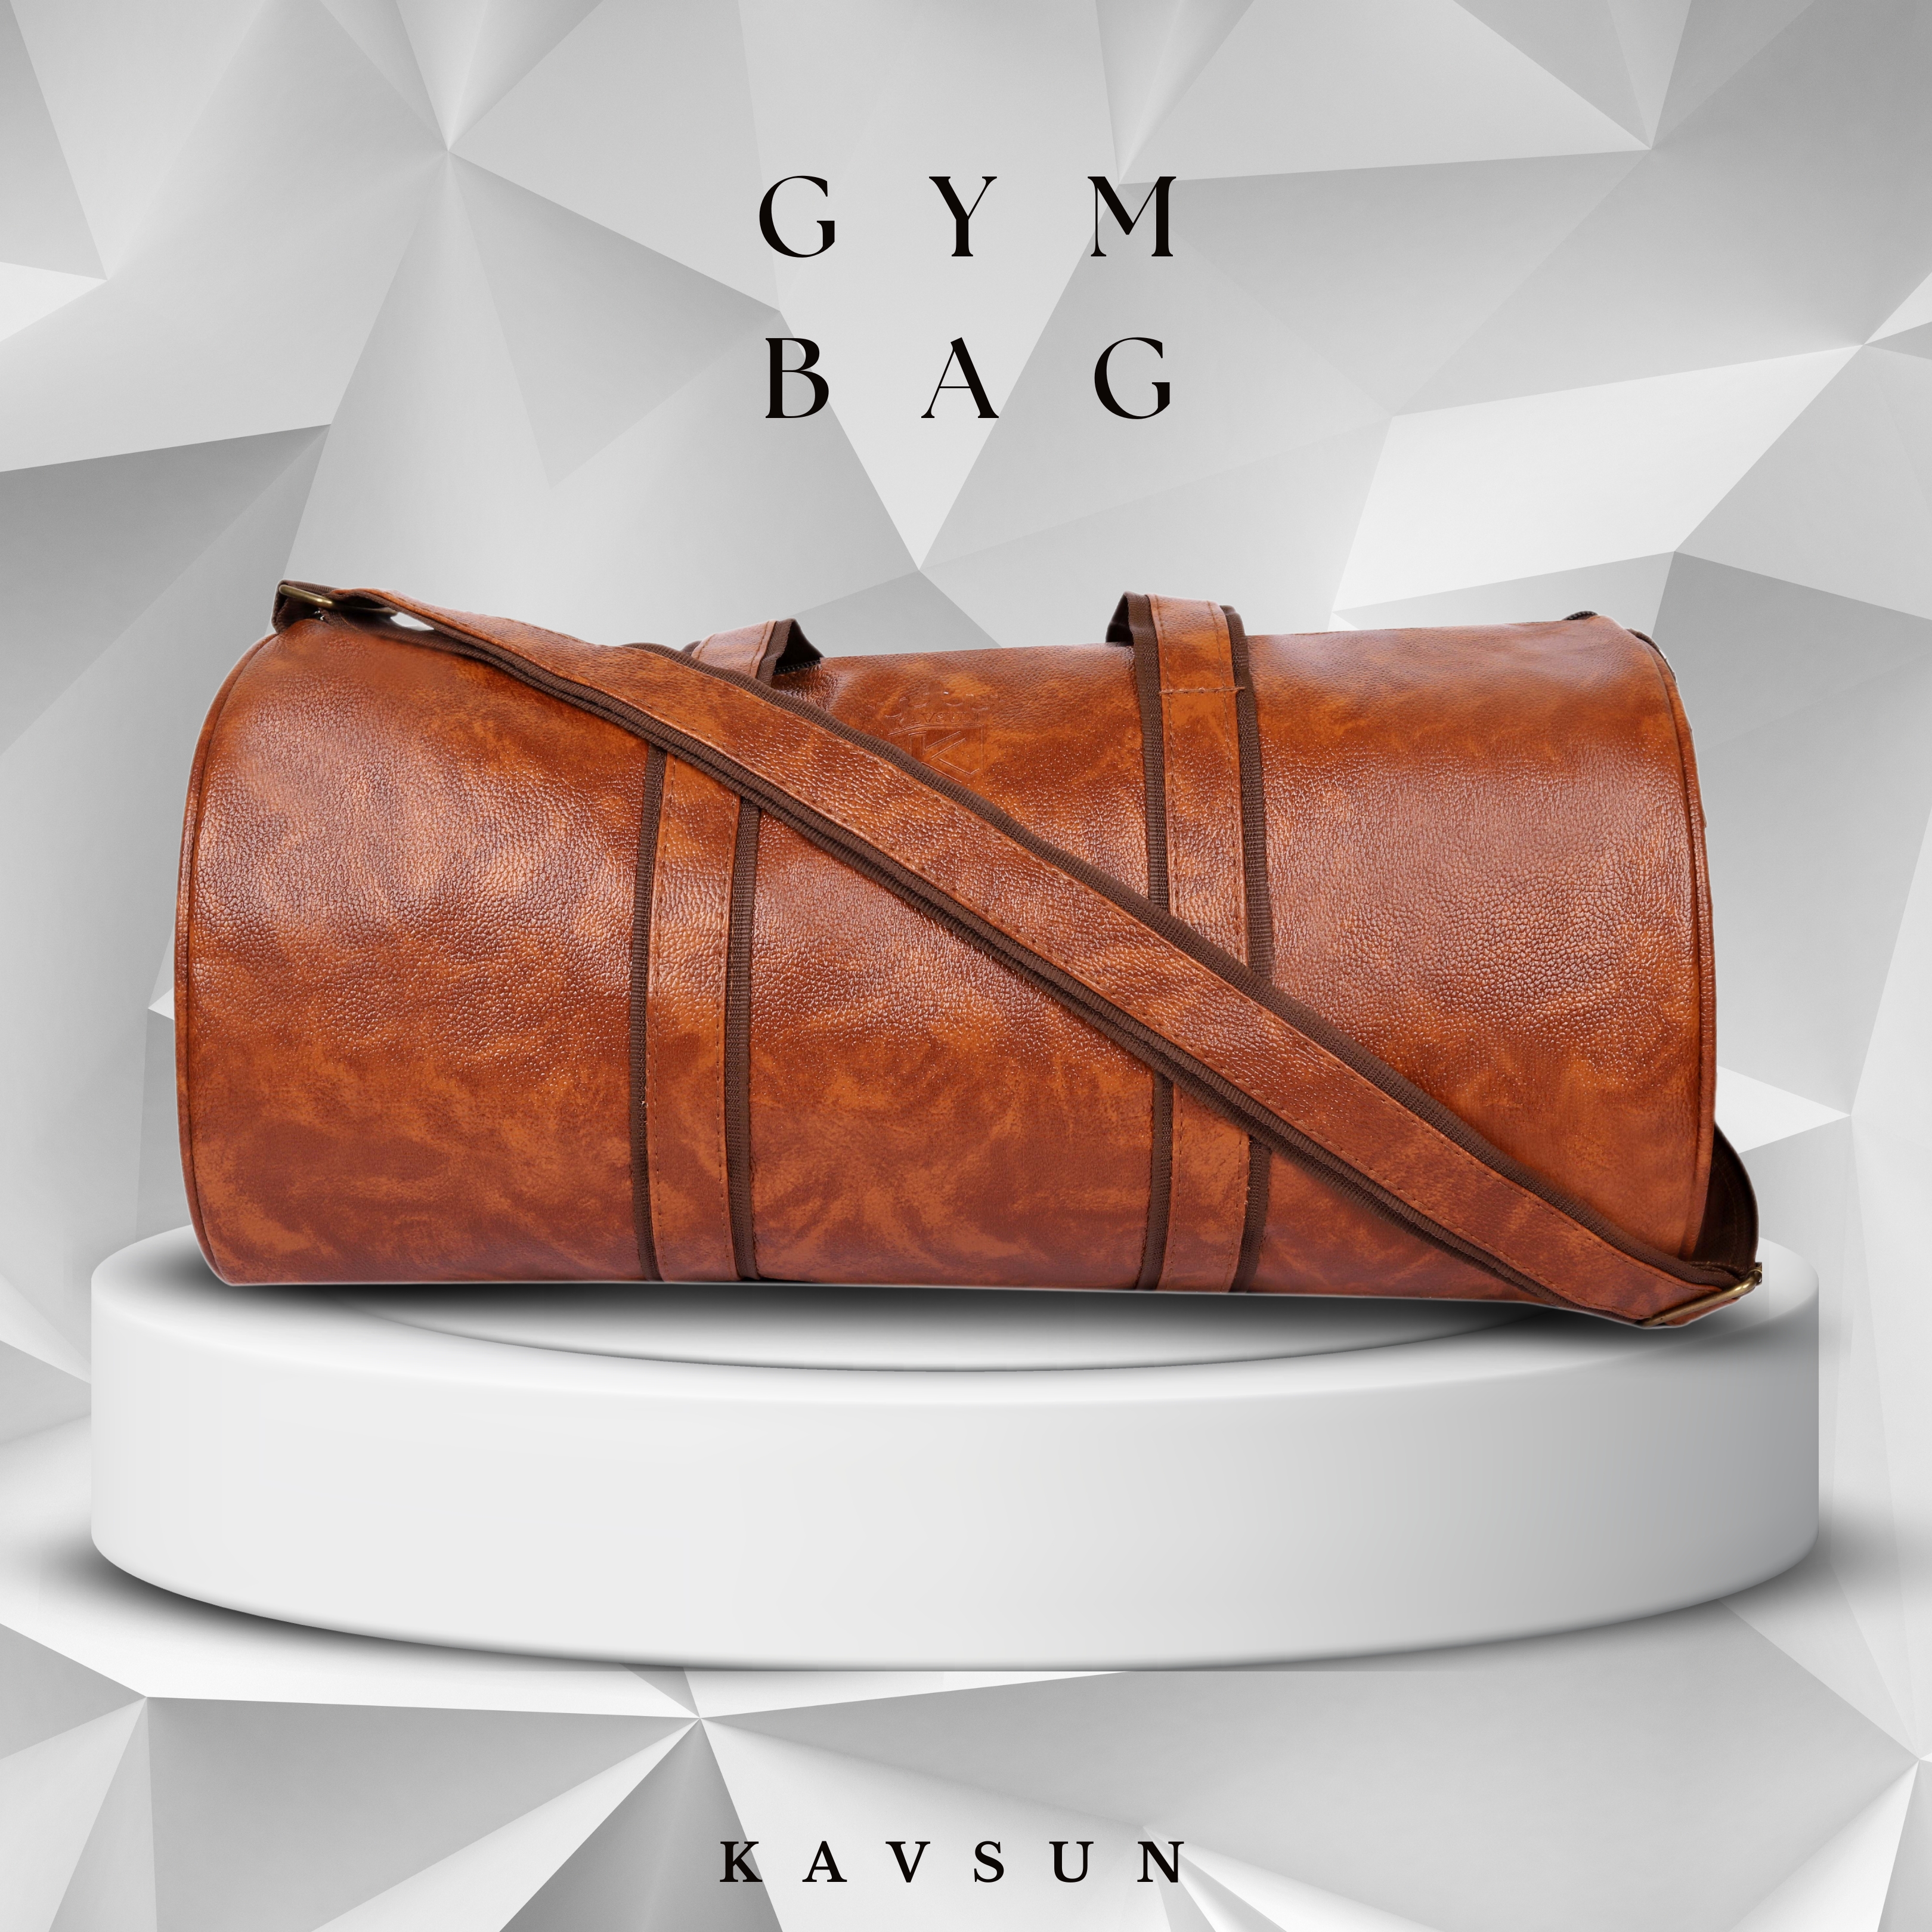 Kavsun Unisex Premium Gym Bag Tan (KVBag-G1)